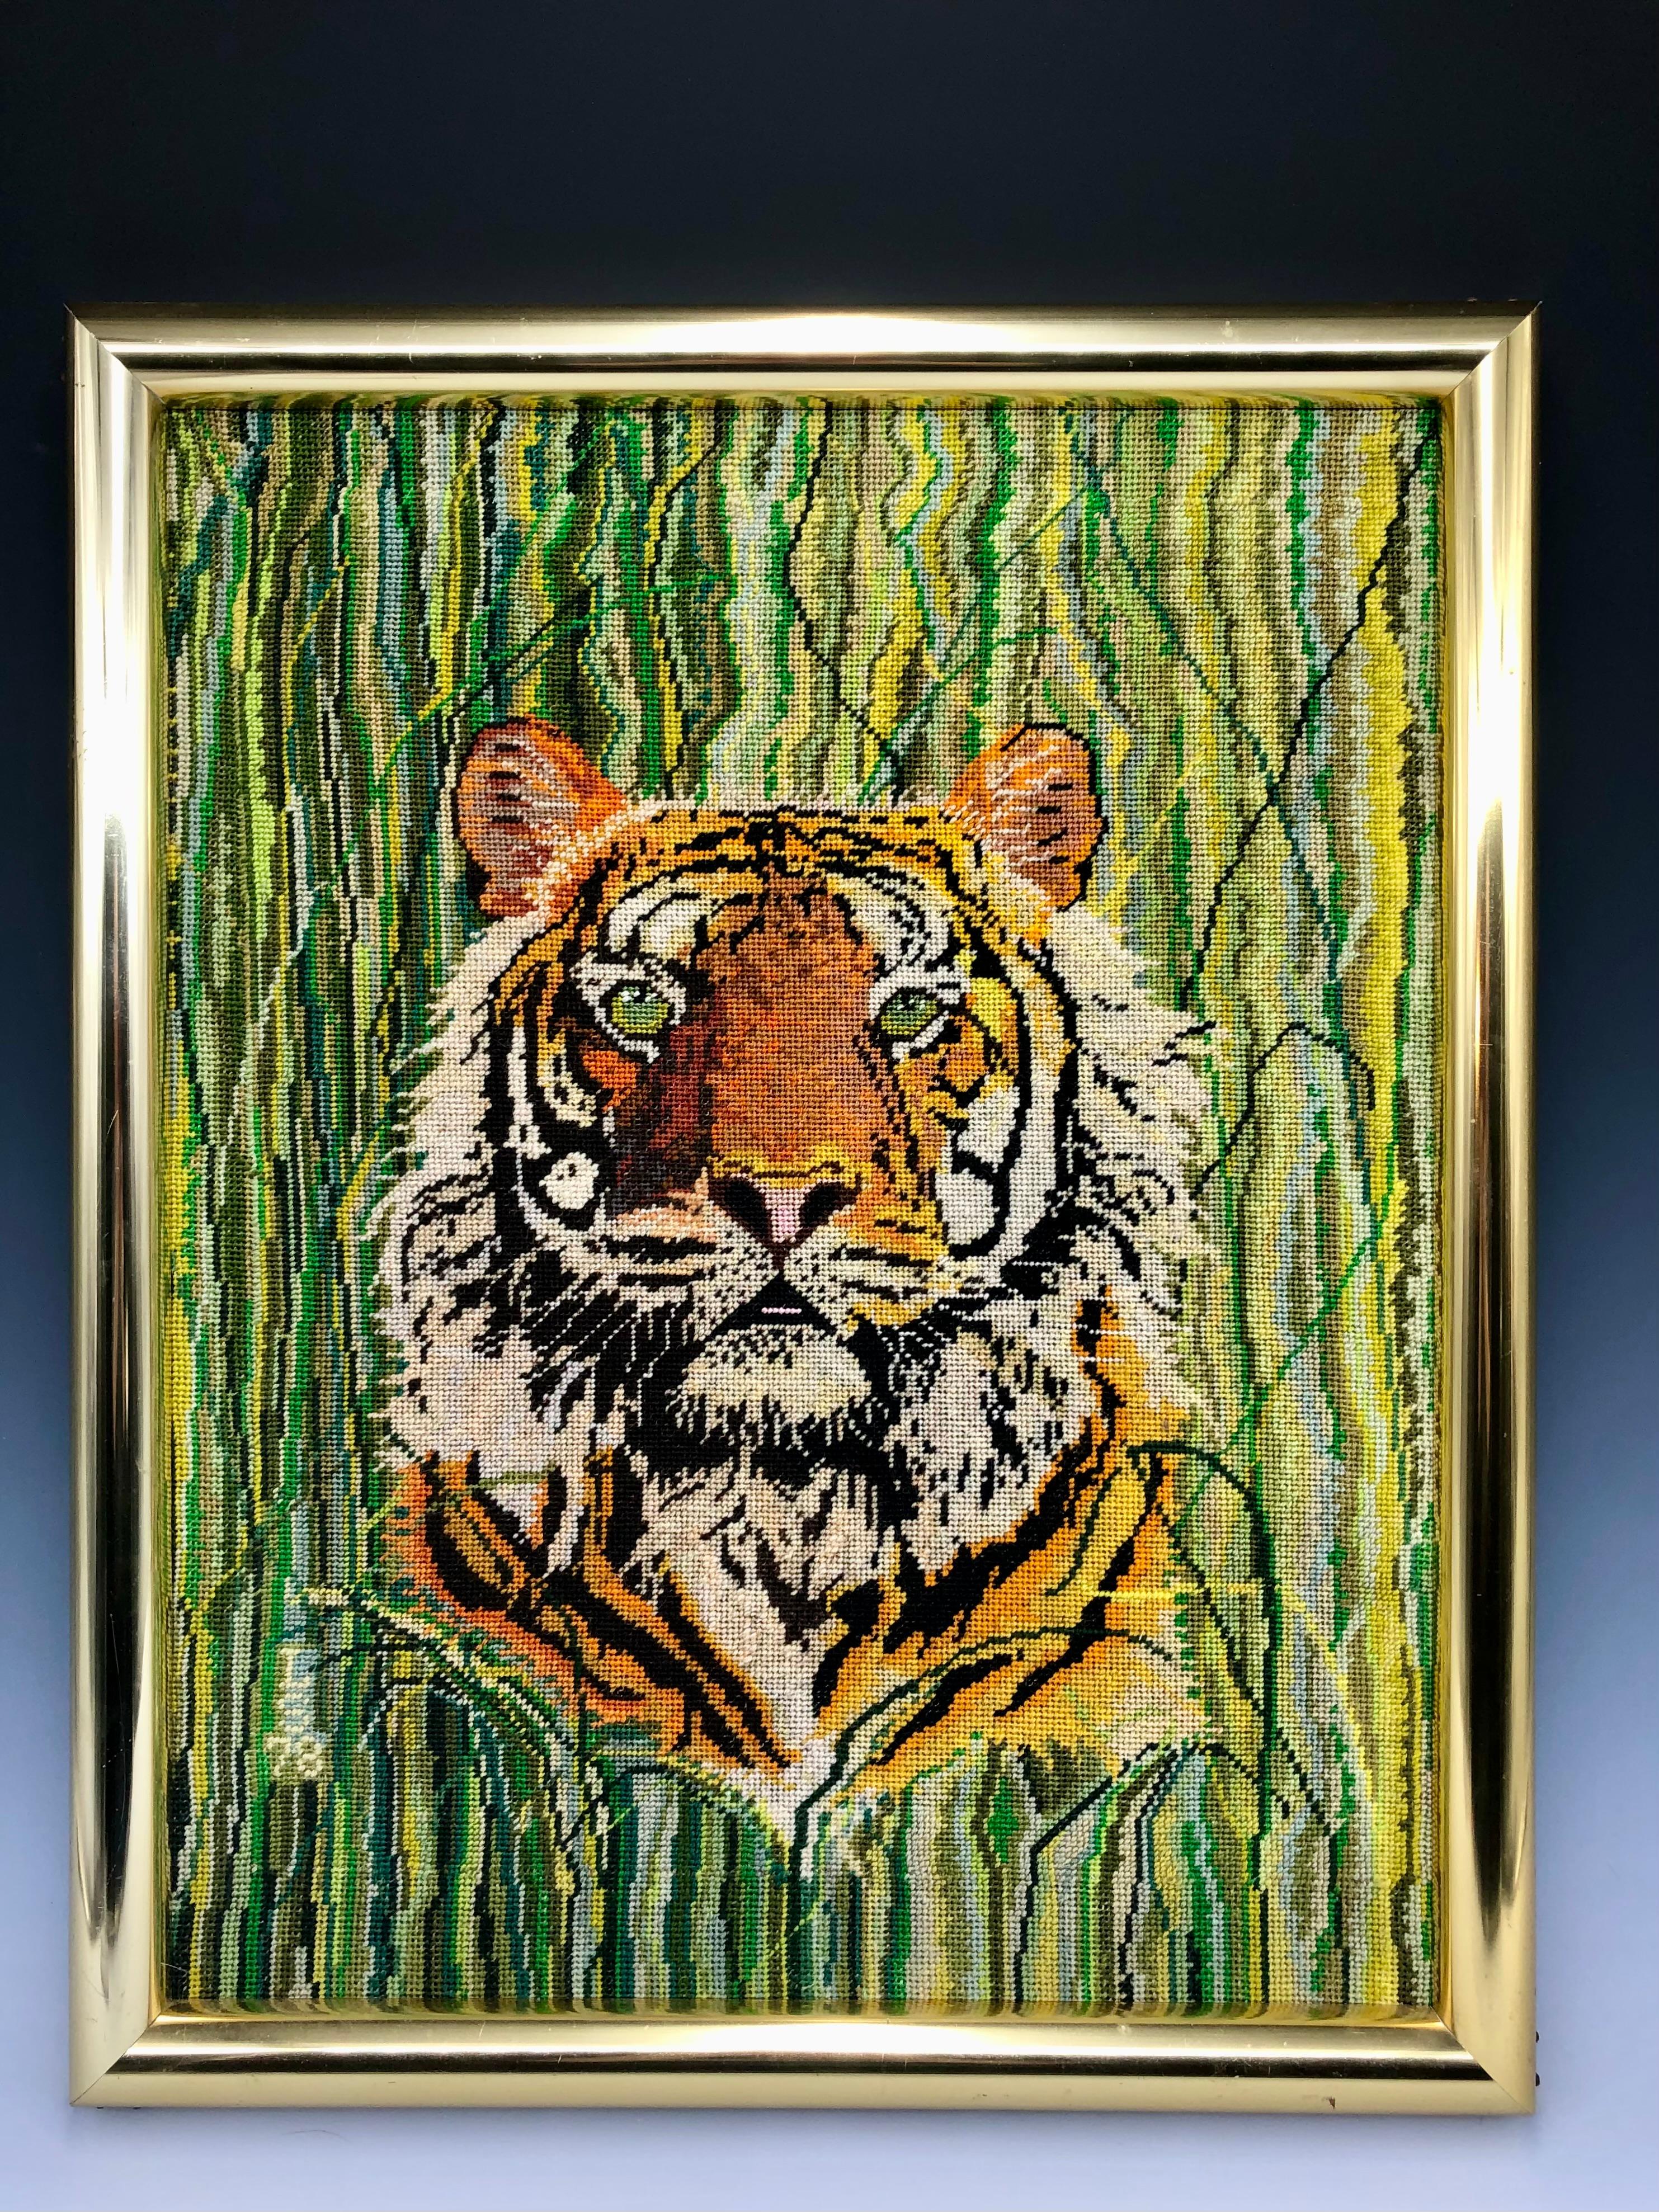 Ce remarquable portrait de tigre brodé des années 1970 présente un arrière-plan abstrait rayé et herbeux dans les tons verts. 

L'objet est encadré dans un cadre en laiton épais. Elle est signée 